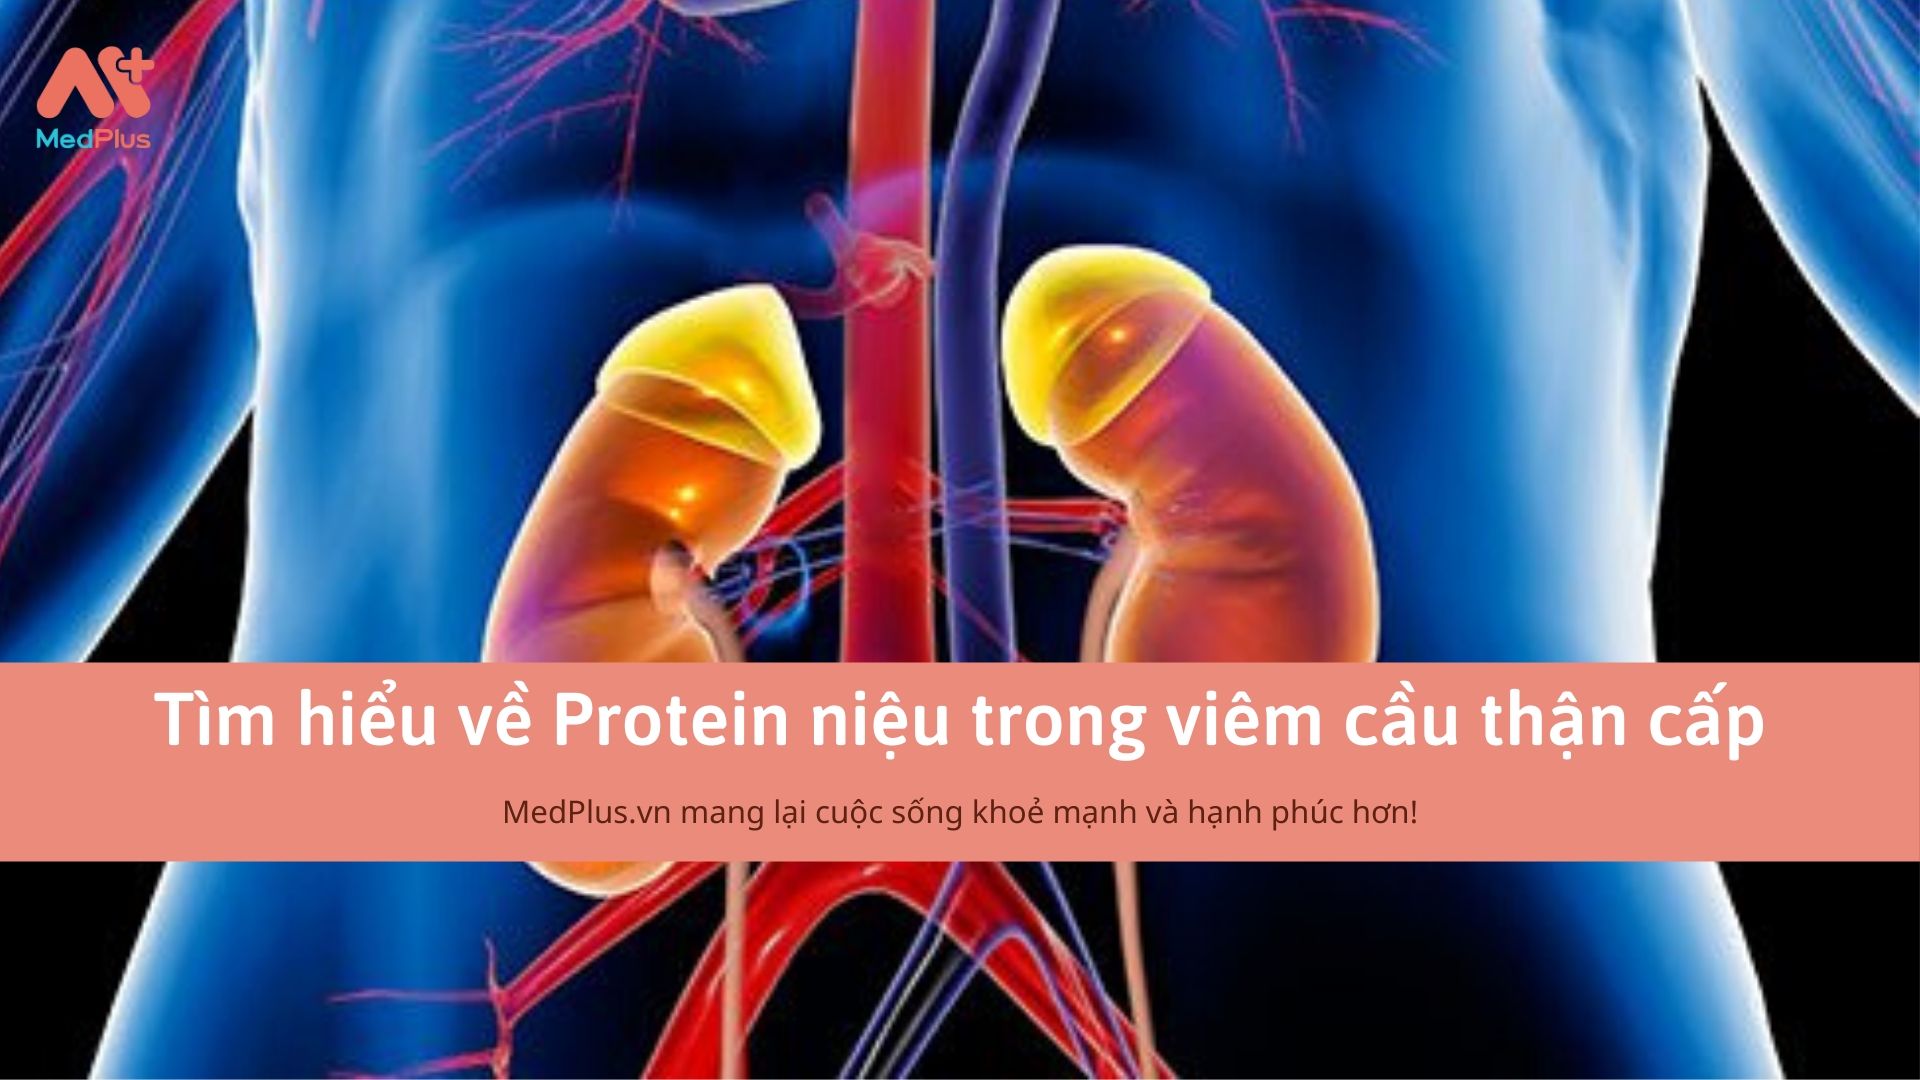 Tìm hiểu về Protein niệu trong viêm cầu thận cấp